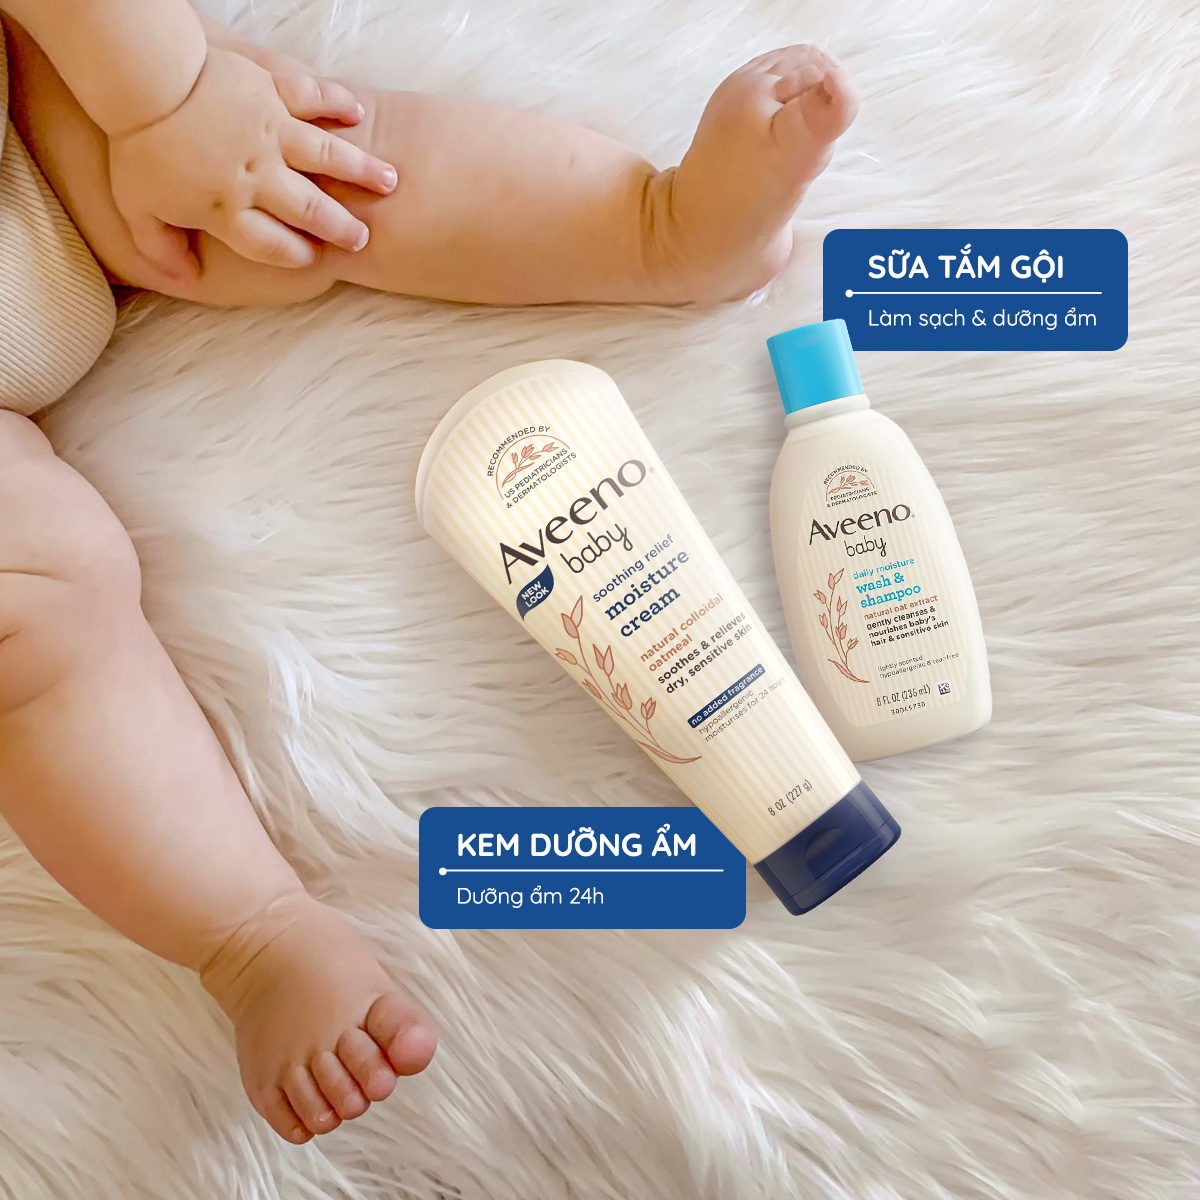 Bộ làm sạch & dưỡng ẩm dành cho da khô & nhạy  cảm cho bé Aveeno Baby (236ml+227g)